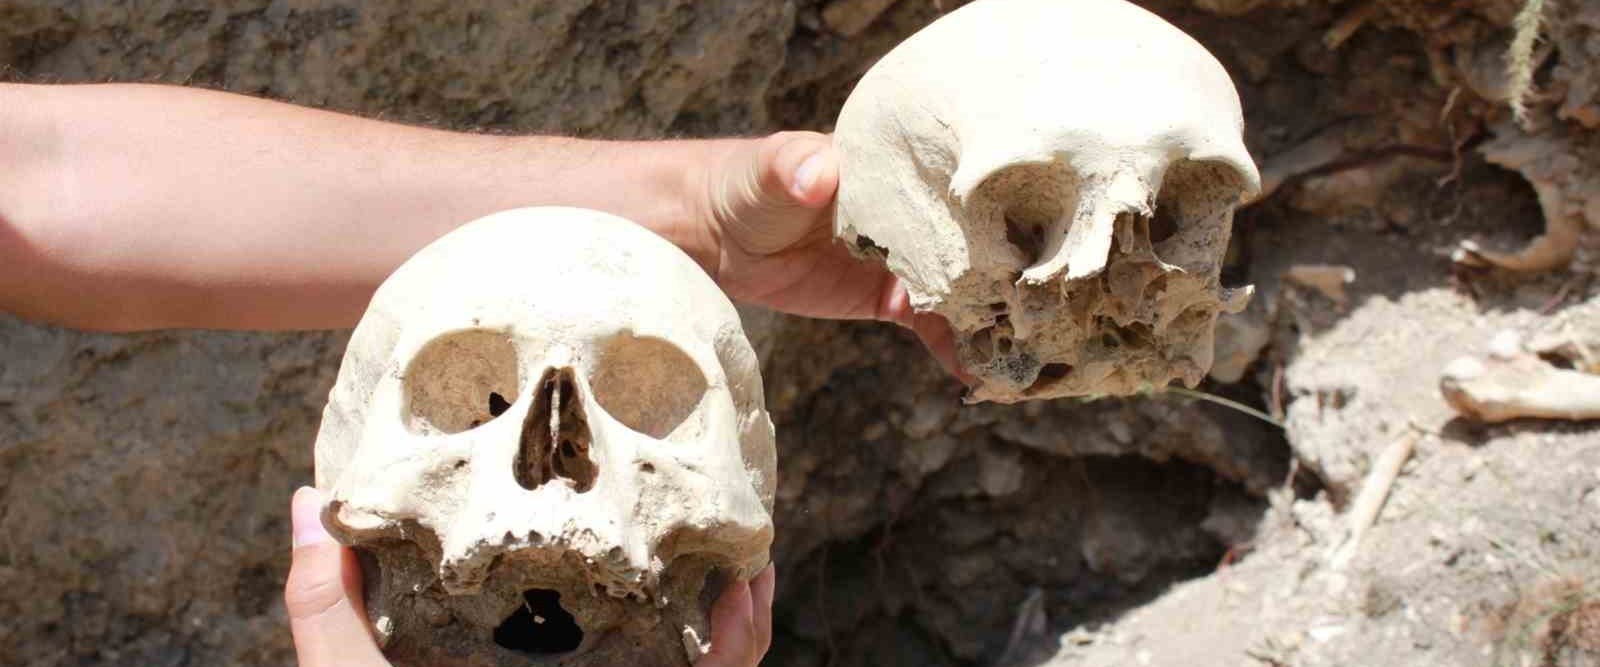 Defineciler tahrip etmişti: Tarihi yerlerde insan kemikleri çıktı